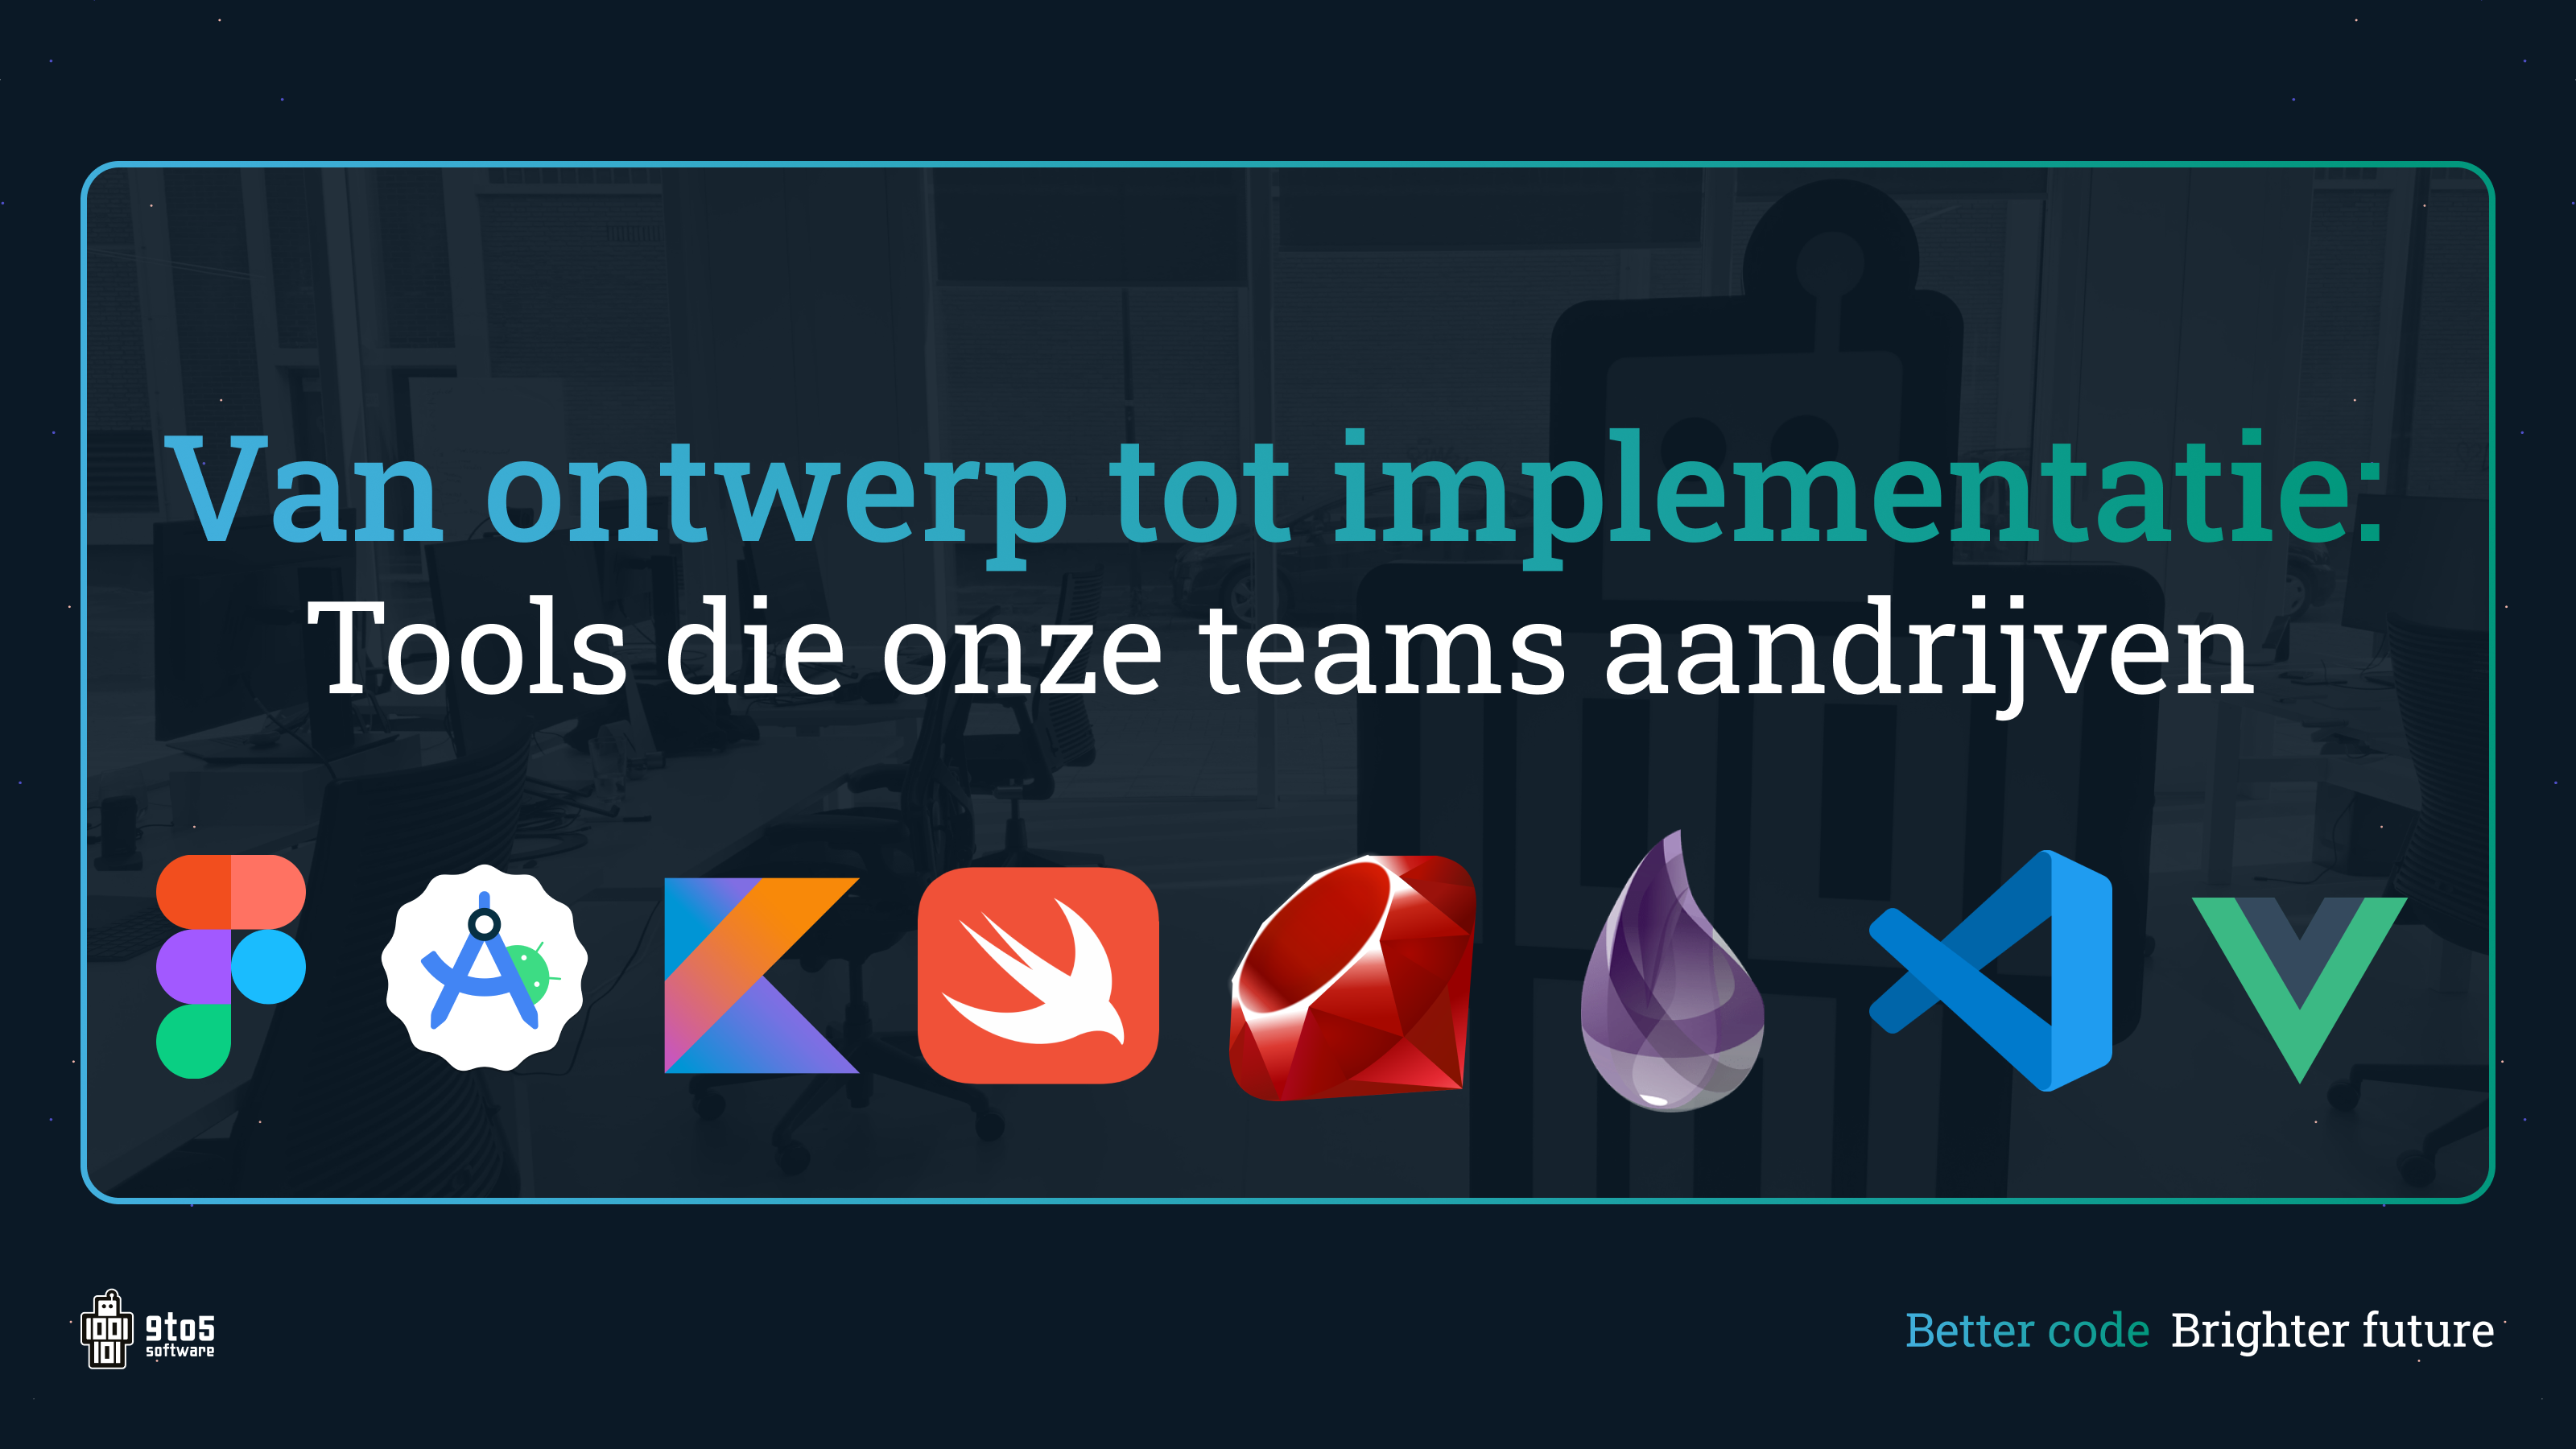 Van ontwerp tot implementatie: De tools die onze teams aandrijven - Ontdek onze teams, van ontwerp tot implementatie, en de tools die ons succes bepalen.